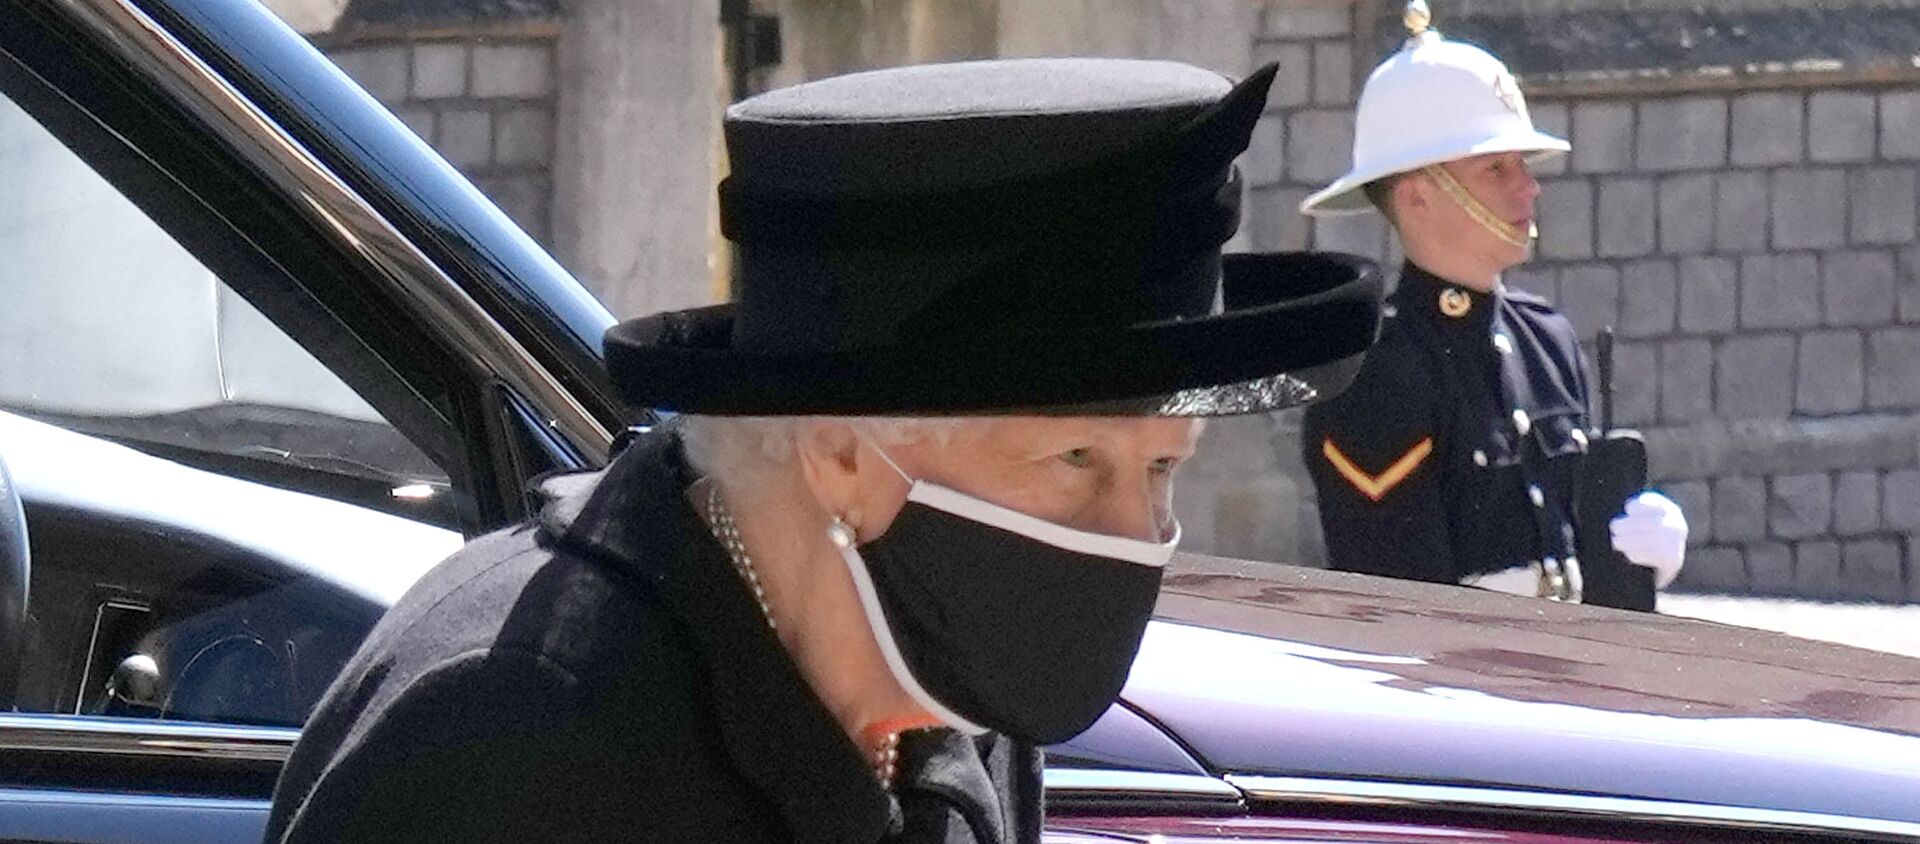 ملكة بريطانيا، إليزابيث الثانية في جنازة زوجها الأمير فيليب في قلعة وندسور، بريطانيا، 17 نيسان/ أبريل 2021  - سبوتنيك عربي, 1920, 17.04.2021